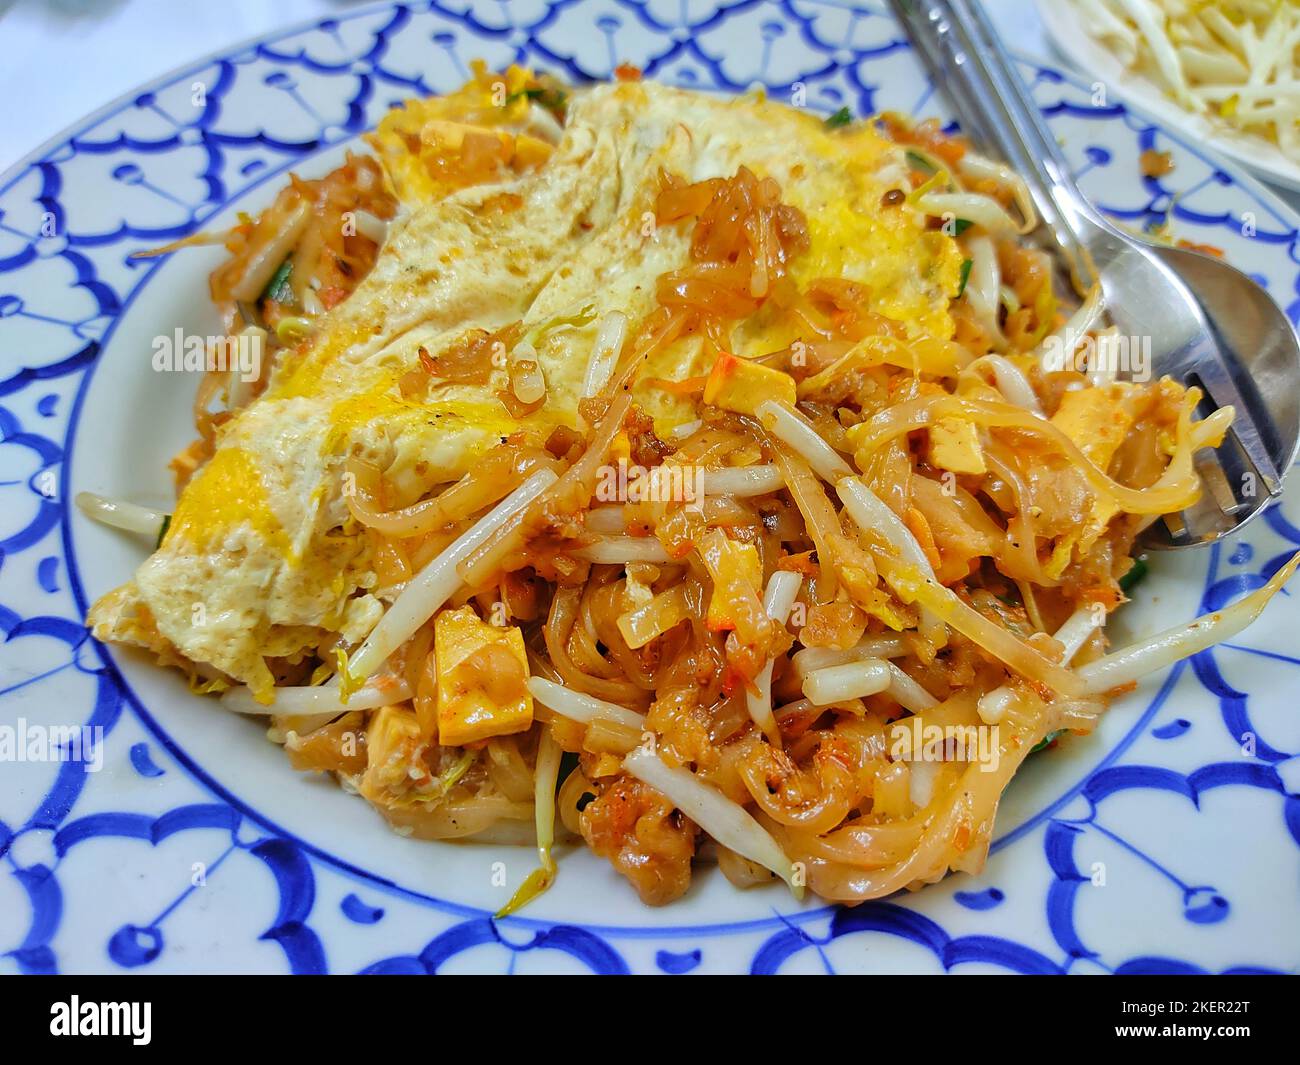 PAD thai, nouilles de riz sautées, cuisine thaïlandaise dans une assiette en porcelaine Banque D'Images